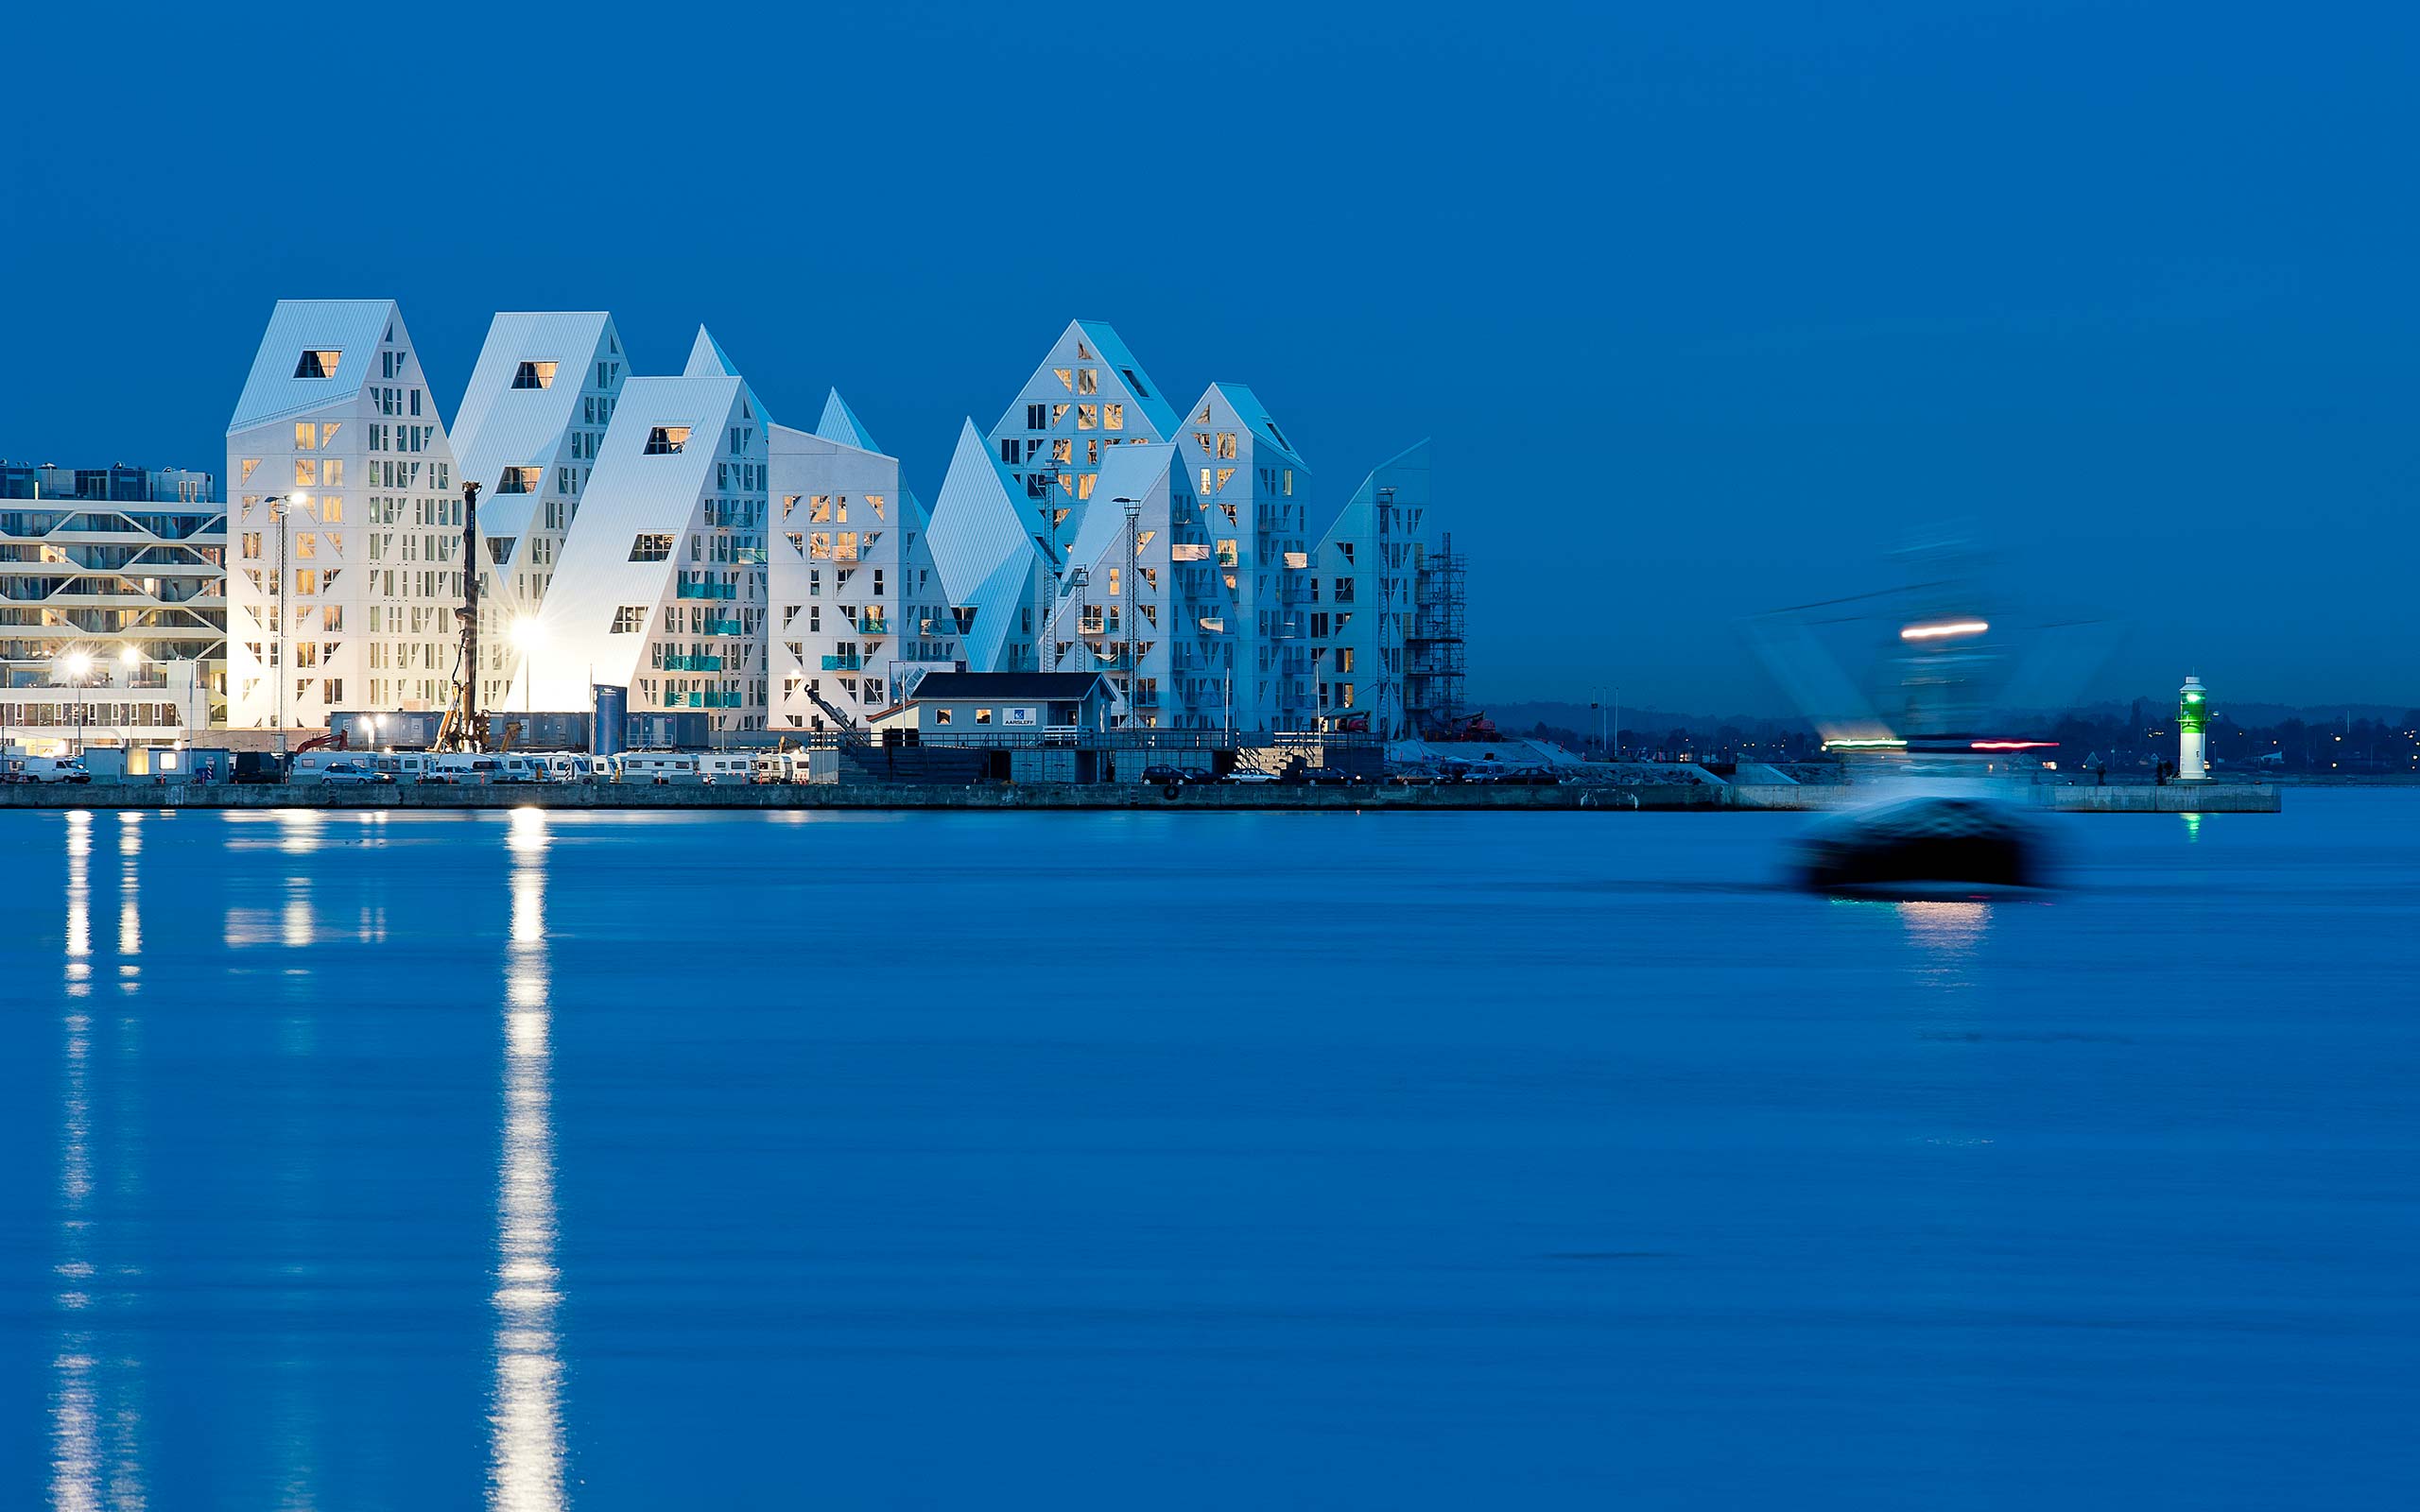 The Iceberg, Aarhus